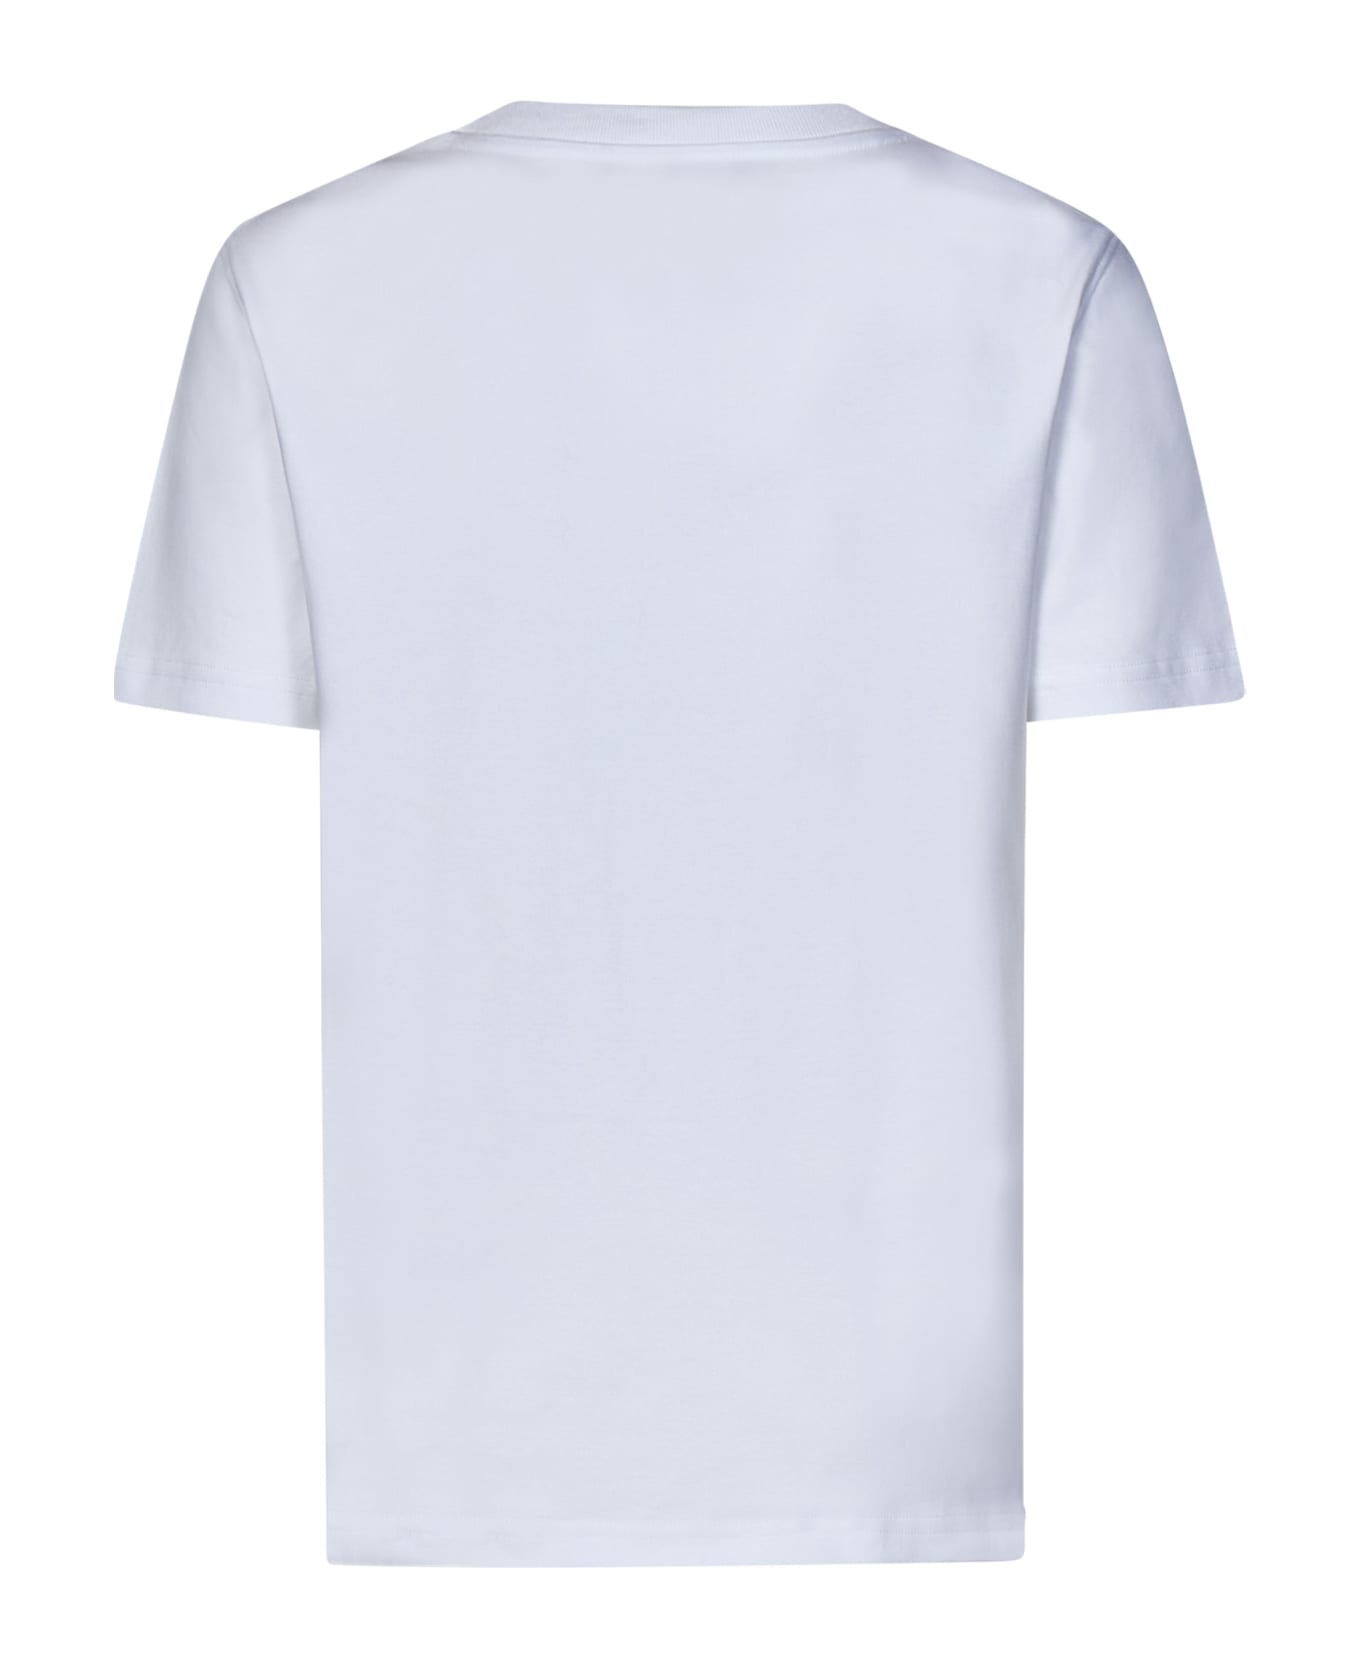 Moschino T-shirt - Bianco